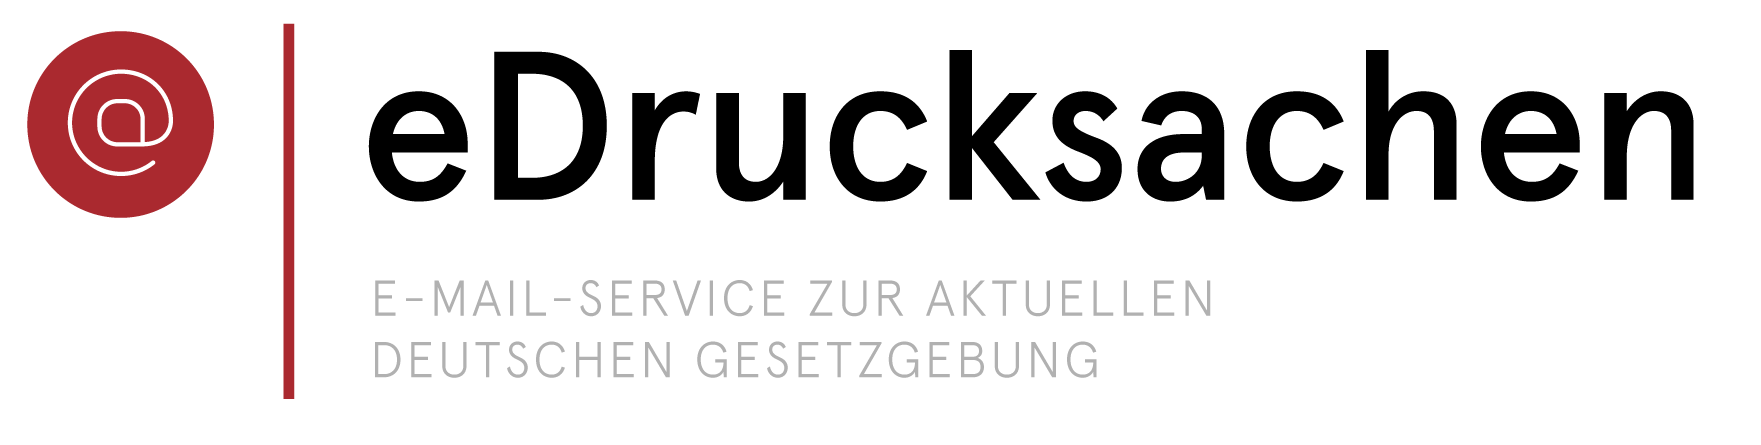 RUG_Logo_eDrucksachen